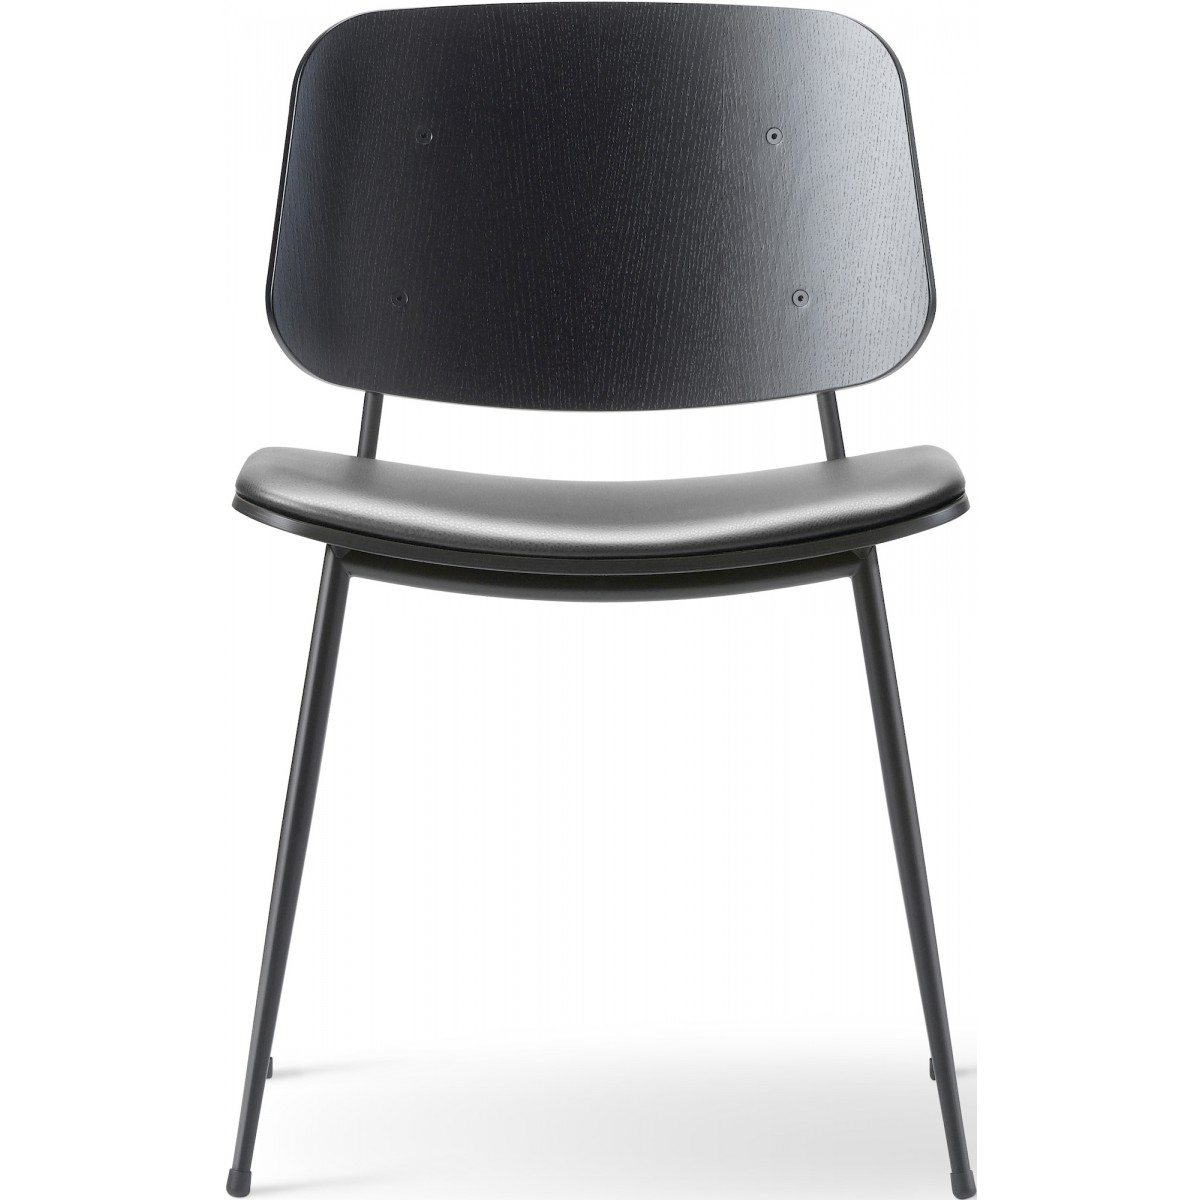 ÉPUISÉ Assise rembourrée – cuir Max 98 + chêne noir vernis / noir – chaise Søborg 3061 (métal)